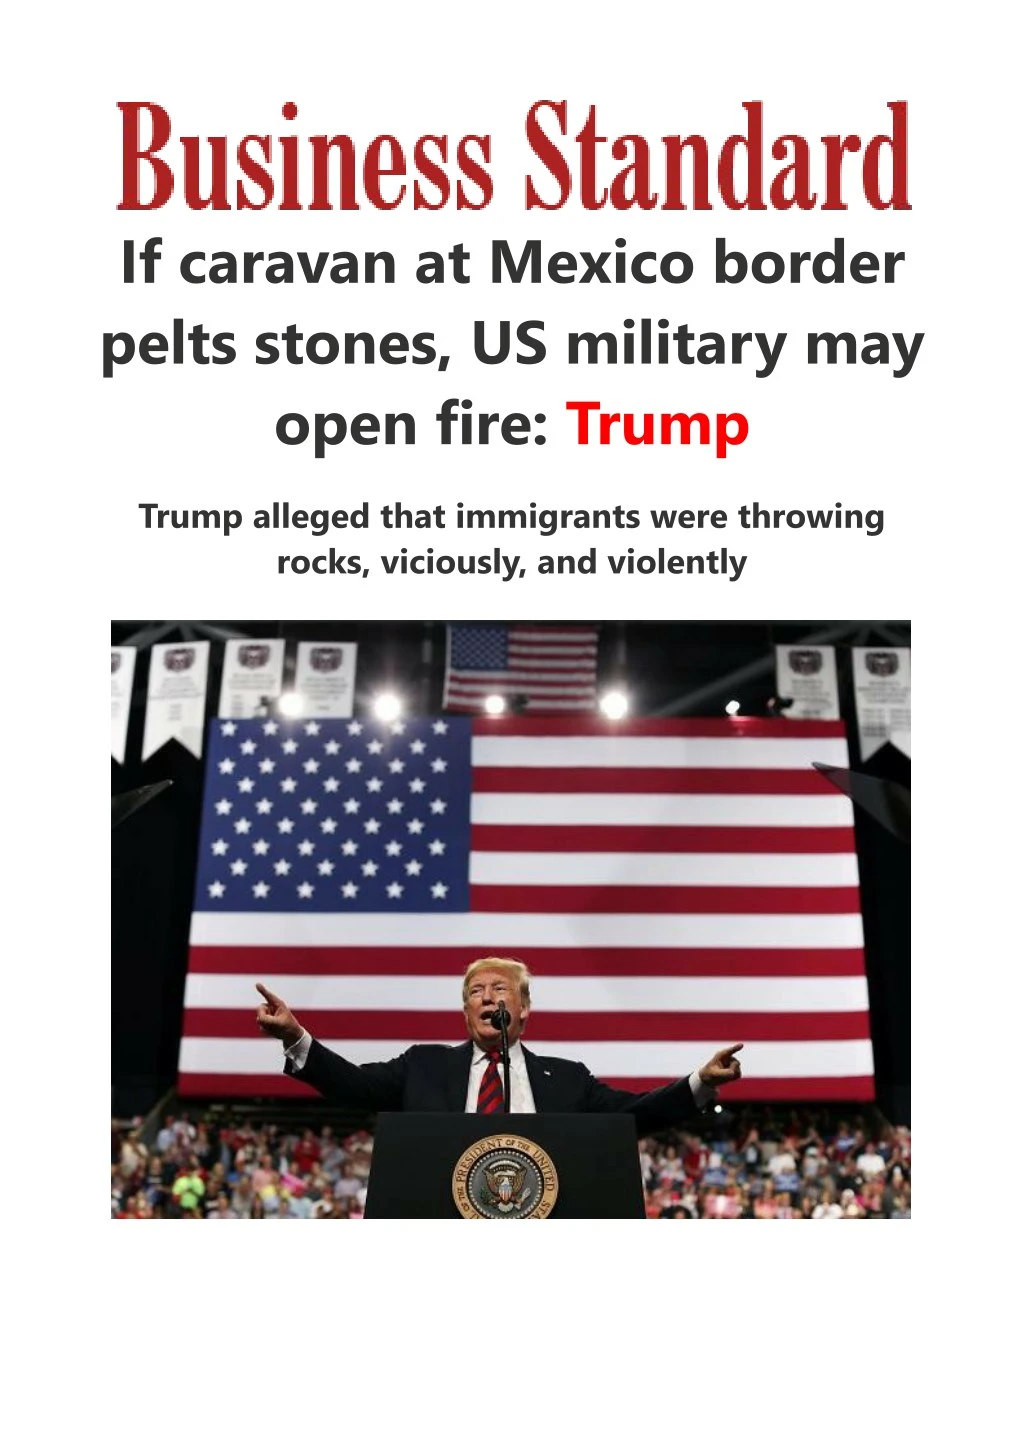 if caravan at mexico border pelts stones